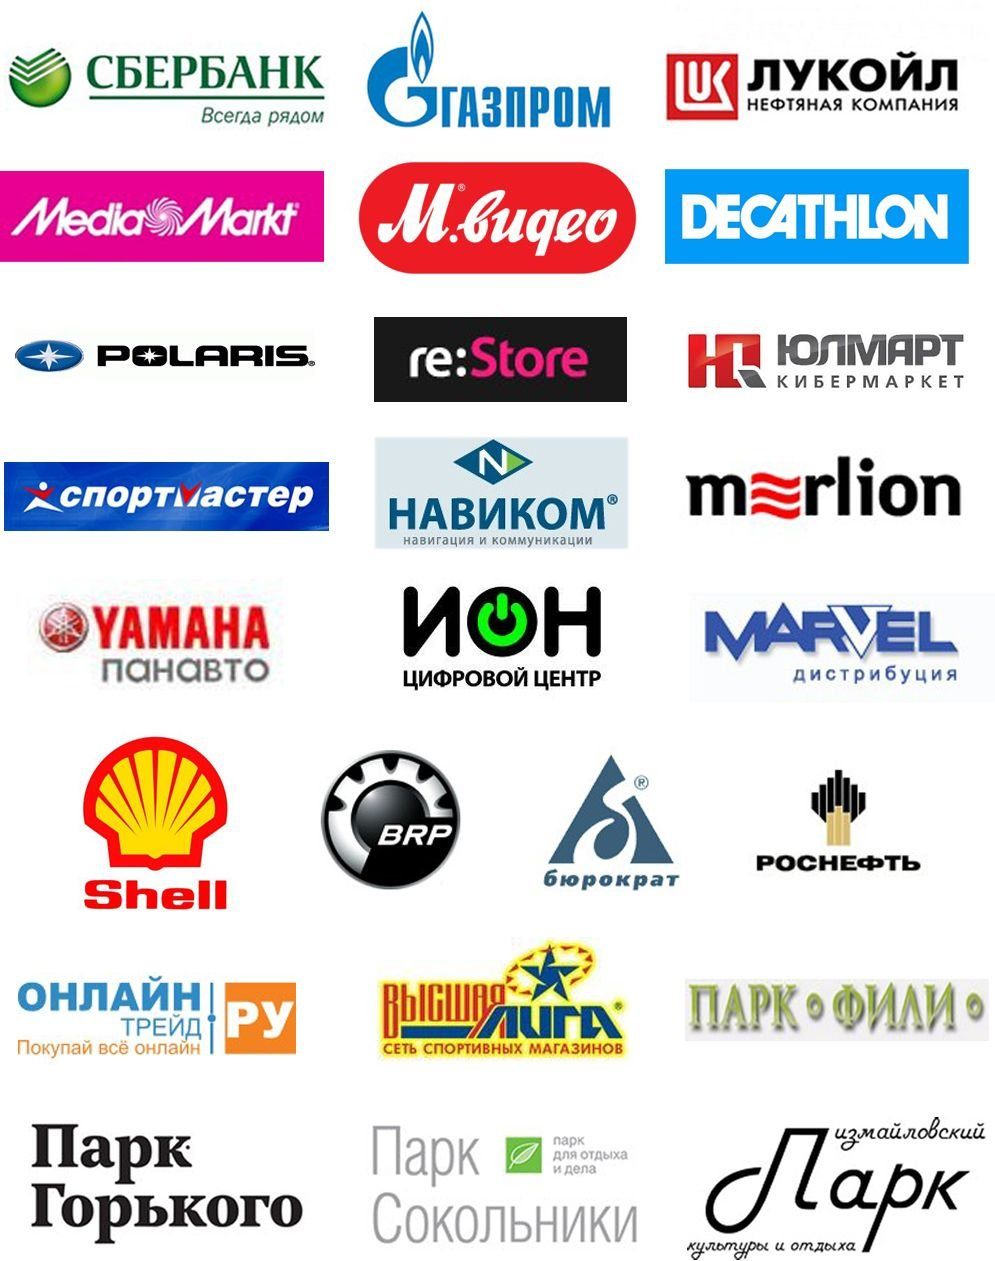 Крупнейшие рекламные компании. Логотипы российских компаний. Известные торговые марки. Логотипы крупных компаний. Названия известных фирм.